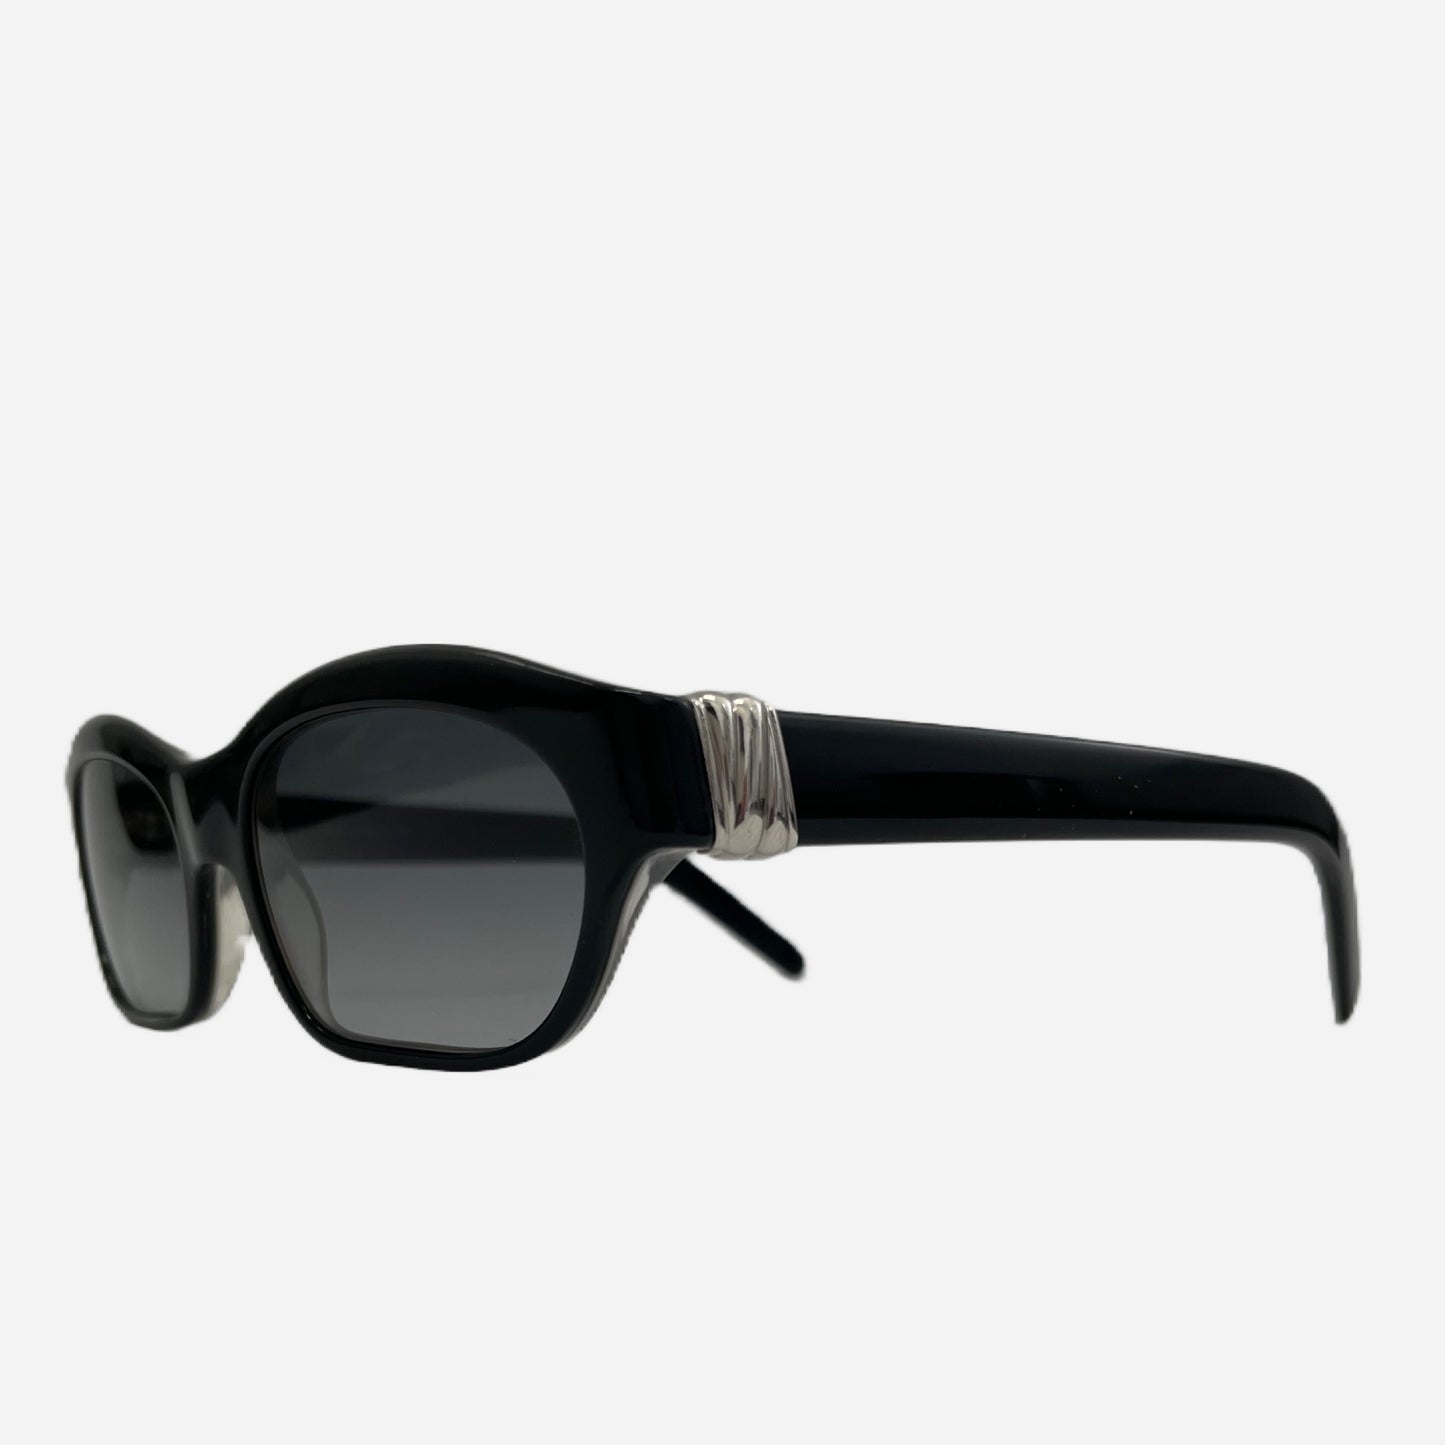 Vintage-Cartier-Joyce-C-Decor-Platinum-Sonnenbrille-Sunglasses-the-seekers-vintage-designer-sunglasses-side2